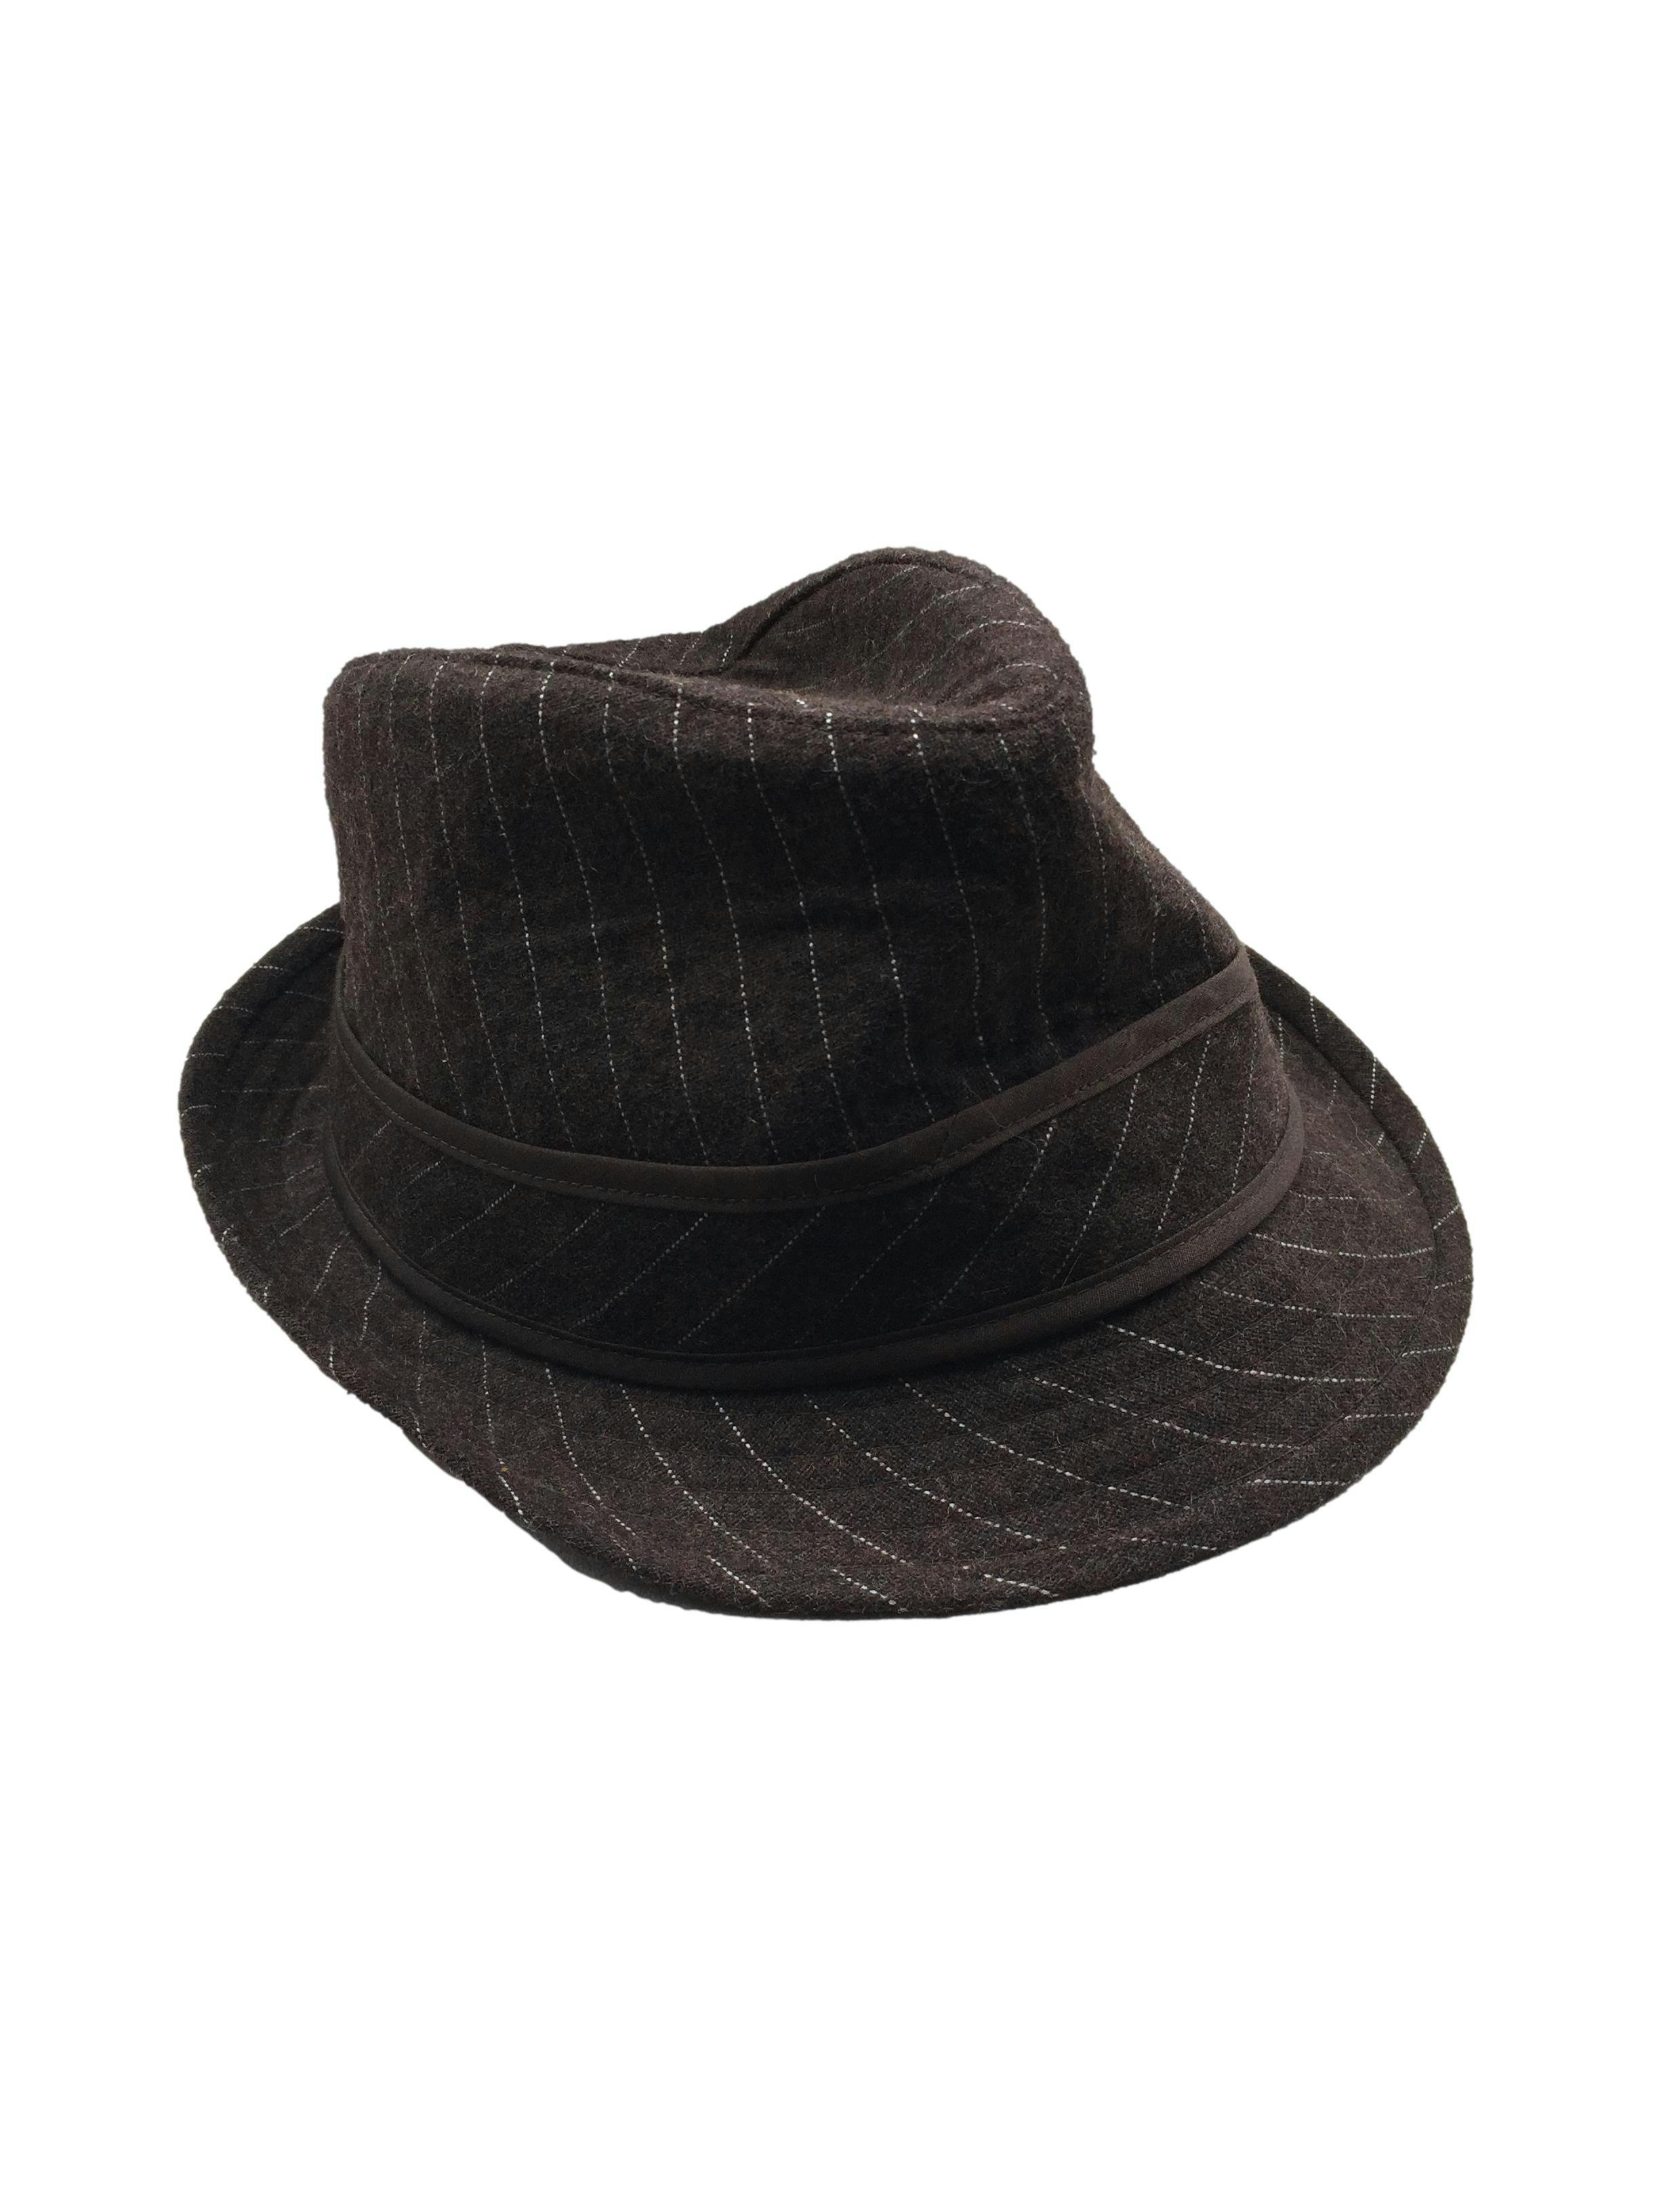 Sombrero marrón con lineas blancas y forro, ala 4cm.